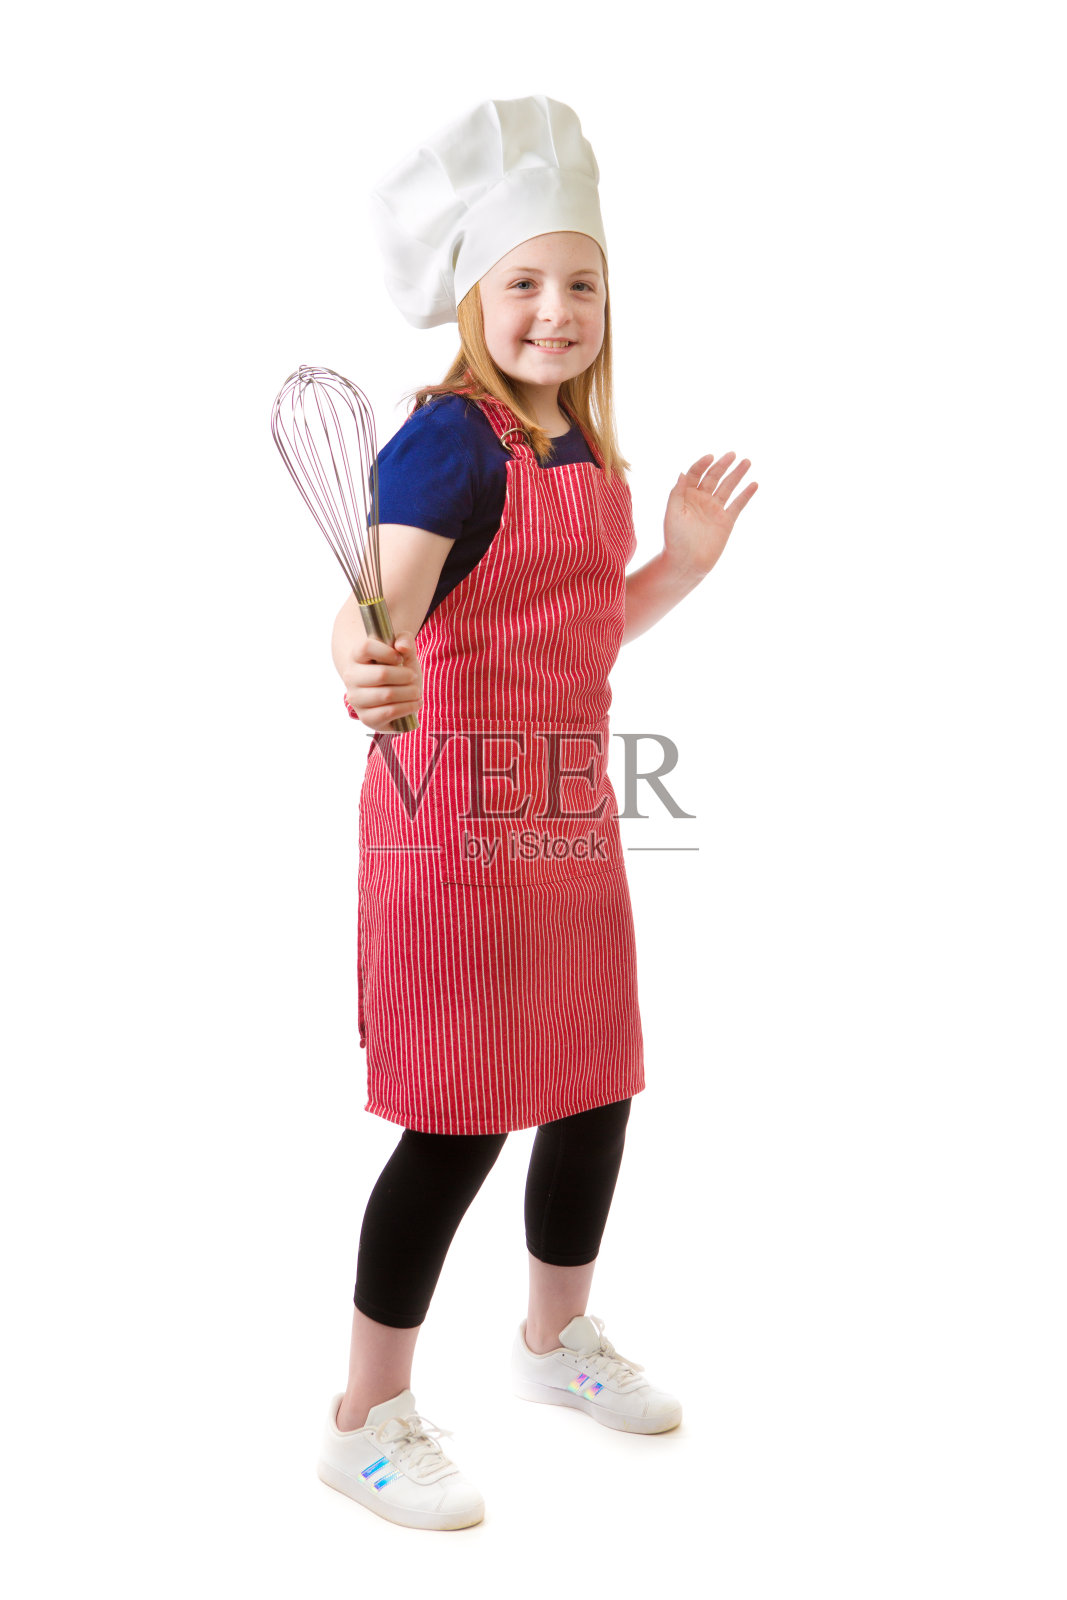 年轻女孩未来的职业抱负:成为白人背景下的厨师照片摄影图片